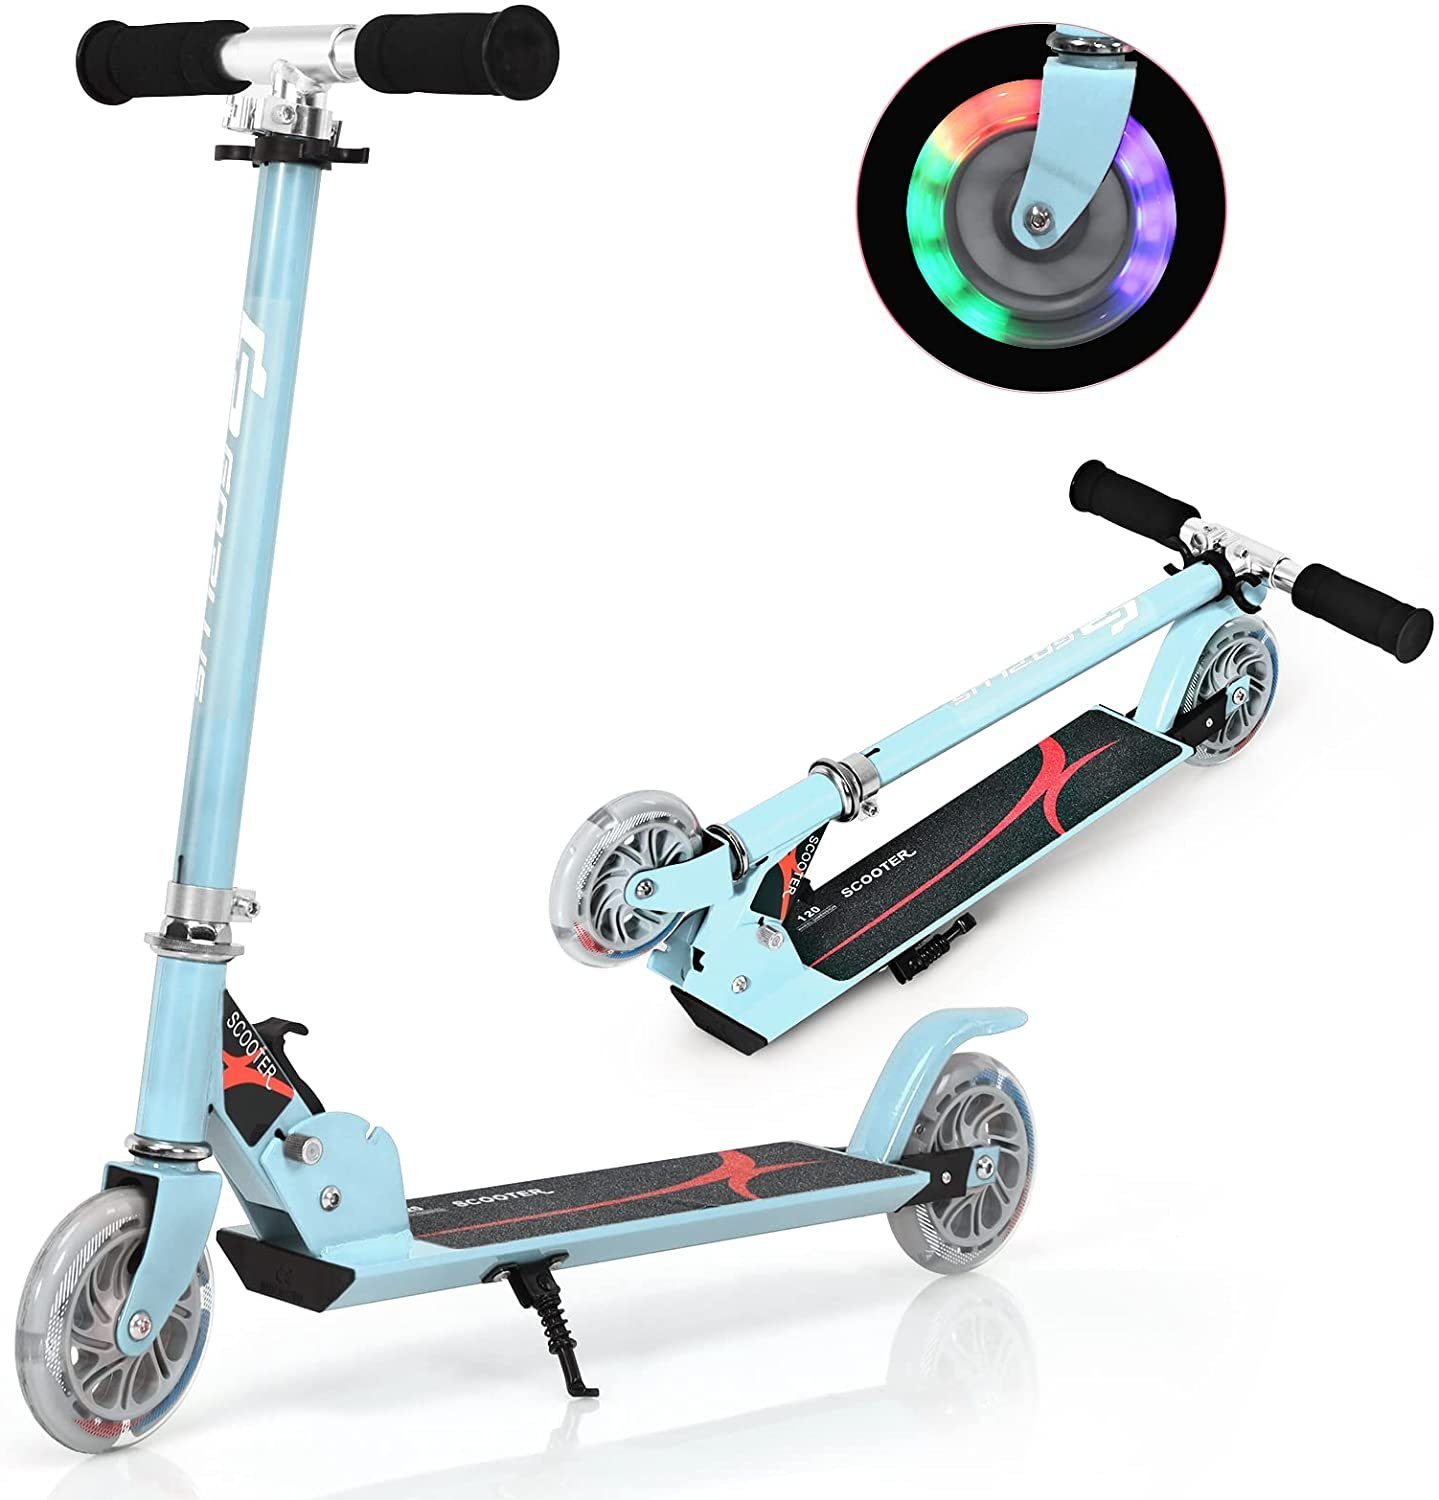 Scooter Kinder Roller Tretroller Cityroller Kick klappbar ABEC 7 mit LED Räder 